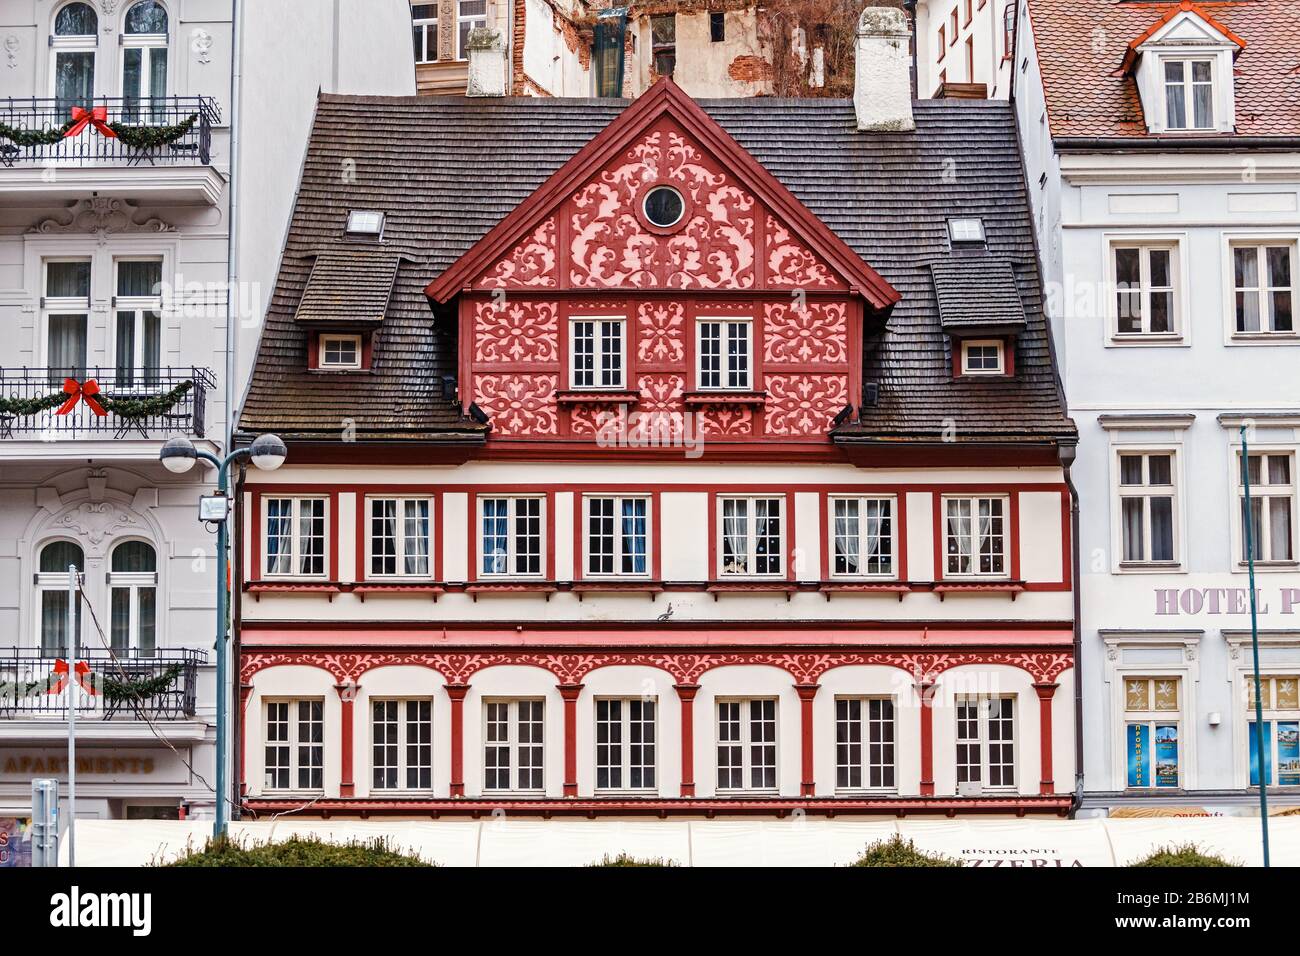 Dicembre 2017, KARLOVY VARY, REPUBBLICA CECA: Hotel colorati e architettura tradizionale nella città resort di Karlovy Vary nella Repubblica Ceca. Foto Stock